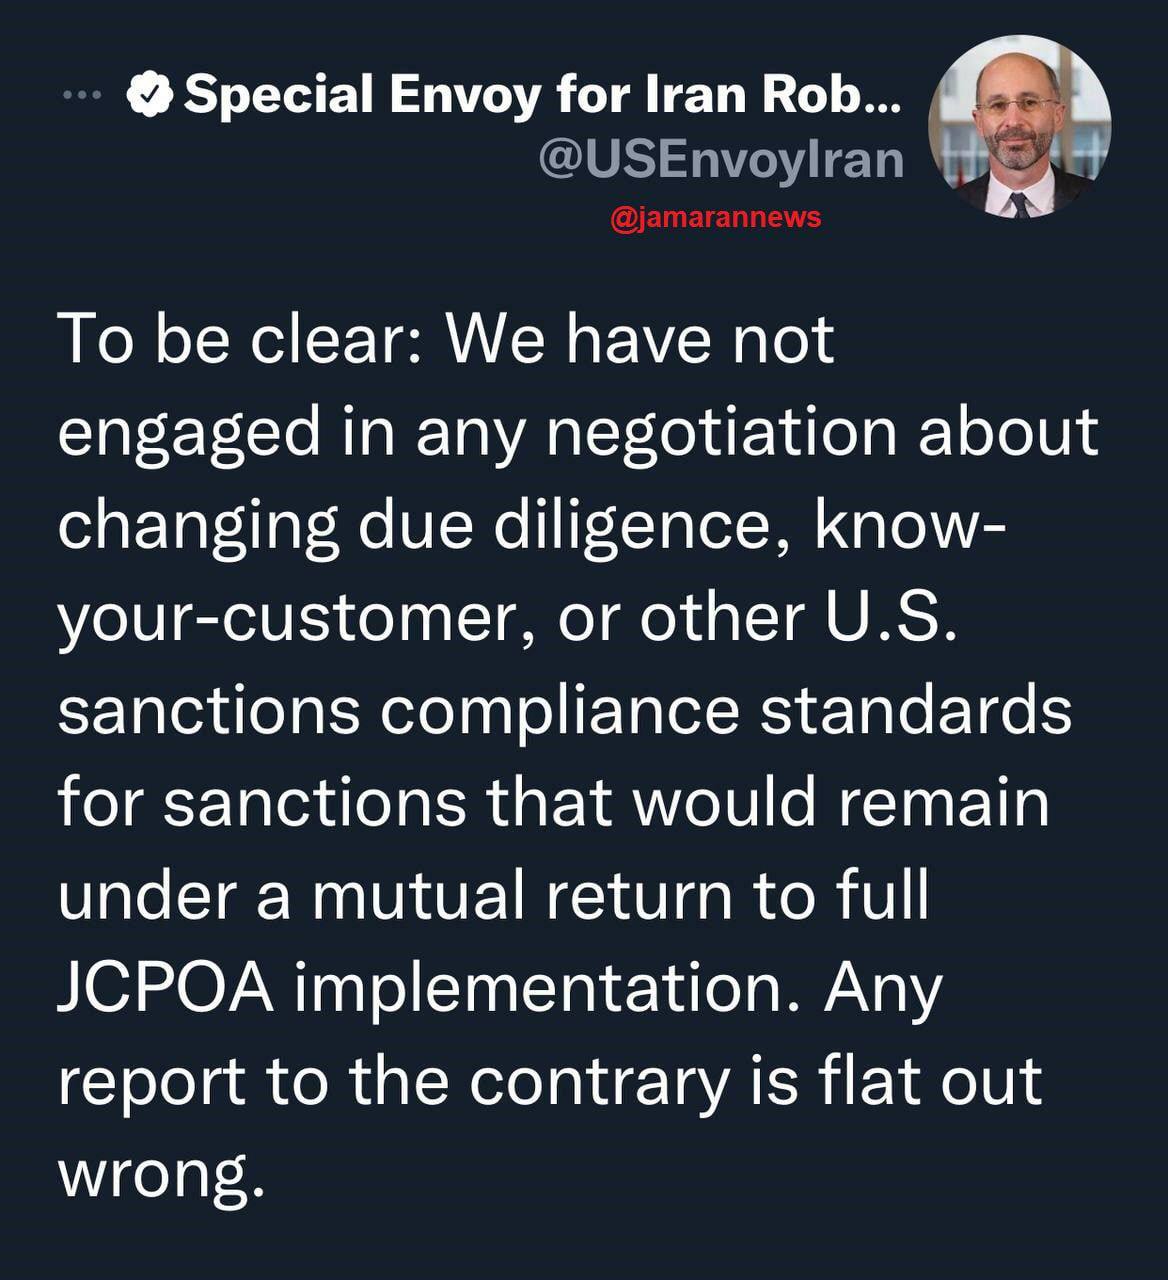 نماینده آمریکا در امور ایران گزارش پولیتیکو را رد کرد